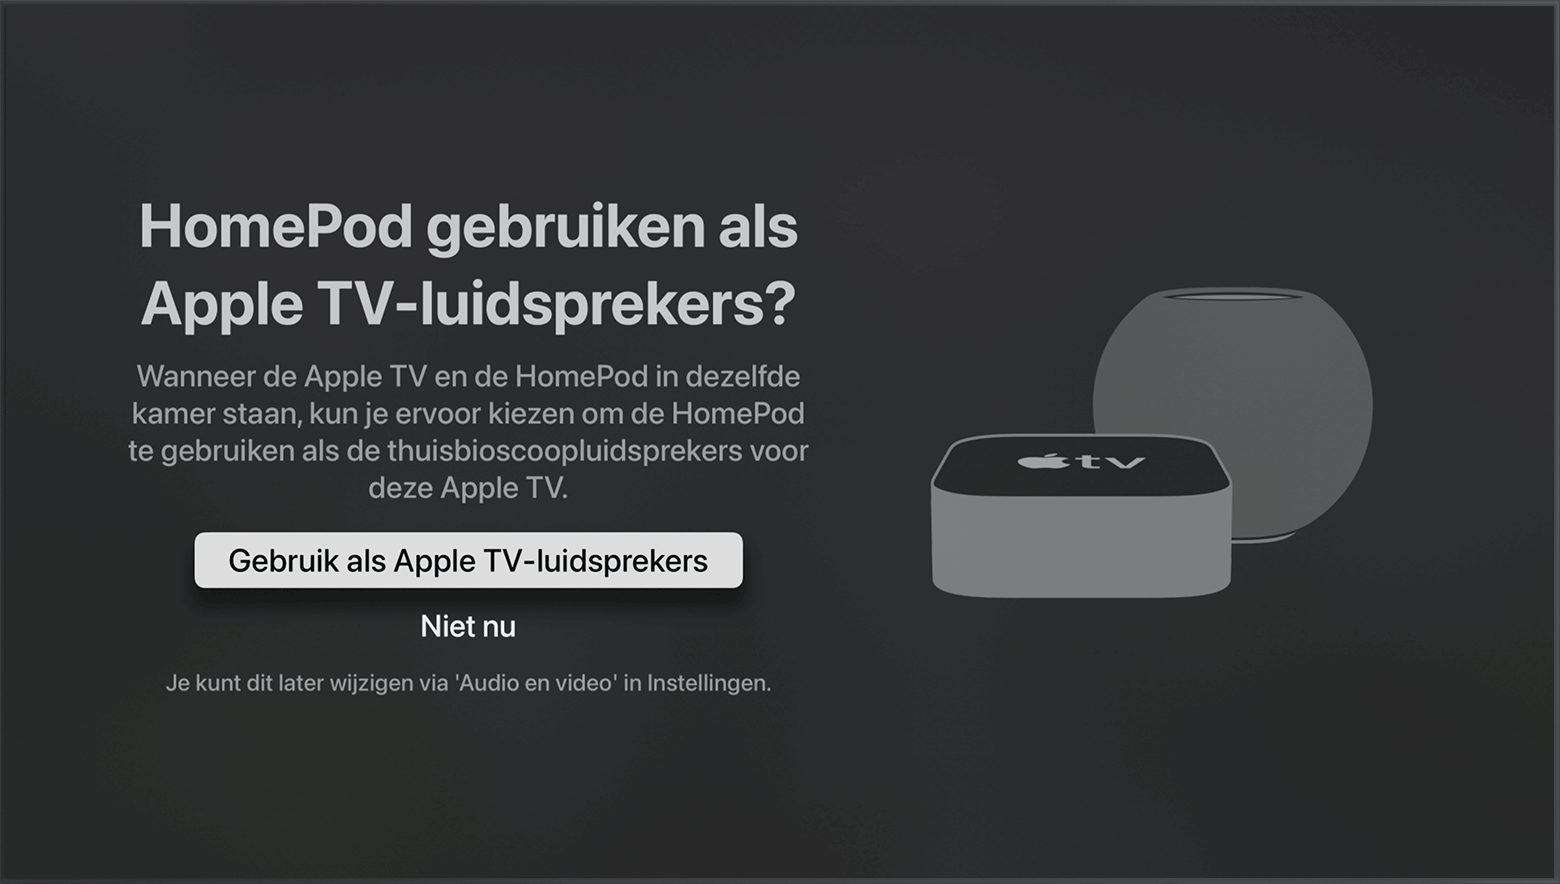 tvOS-schermafbeelding met de vraag of u HomePod-luidsprekers als Apple TV-luidsprekers wilt gebruiken.